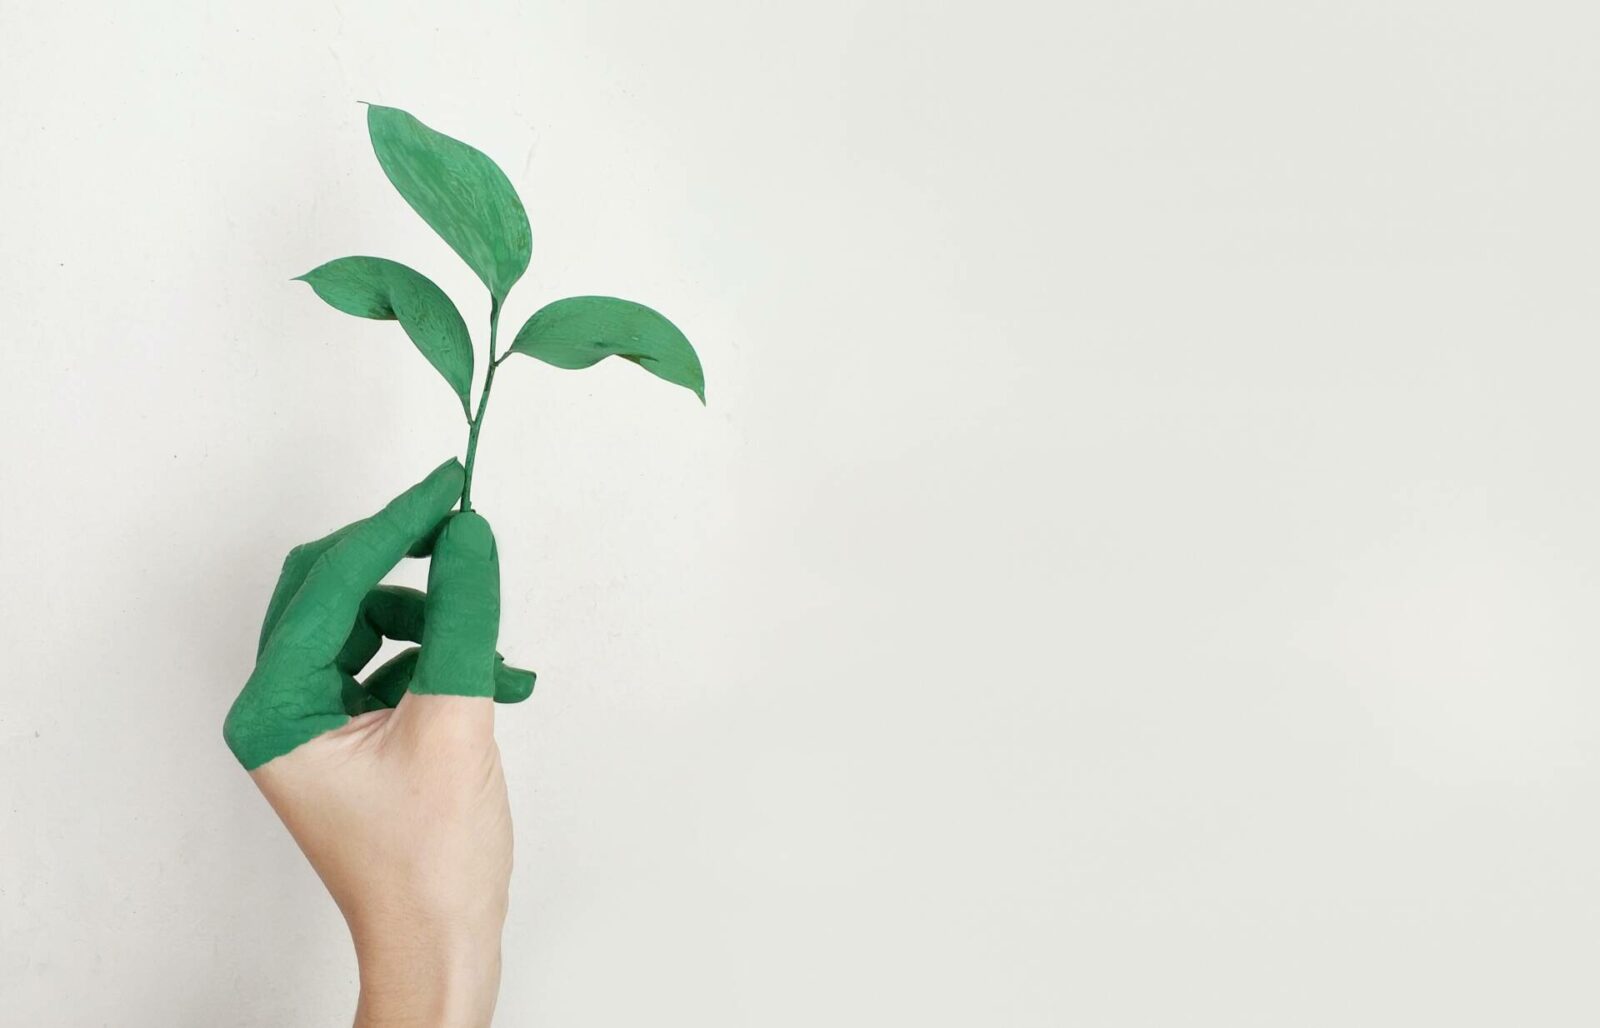 Bà đỡ và Cuộc sống – 9 lời khuyên để trở nên xanh và hỗ trợ các ngành công nghiệp bền vững